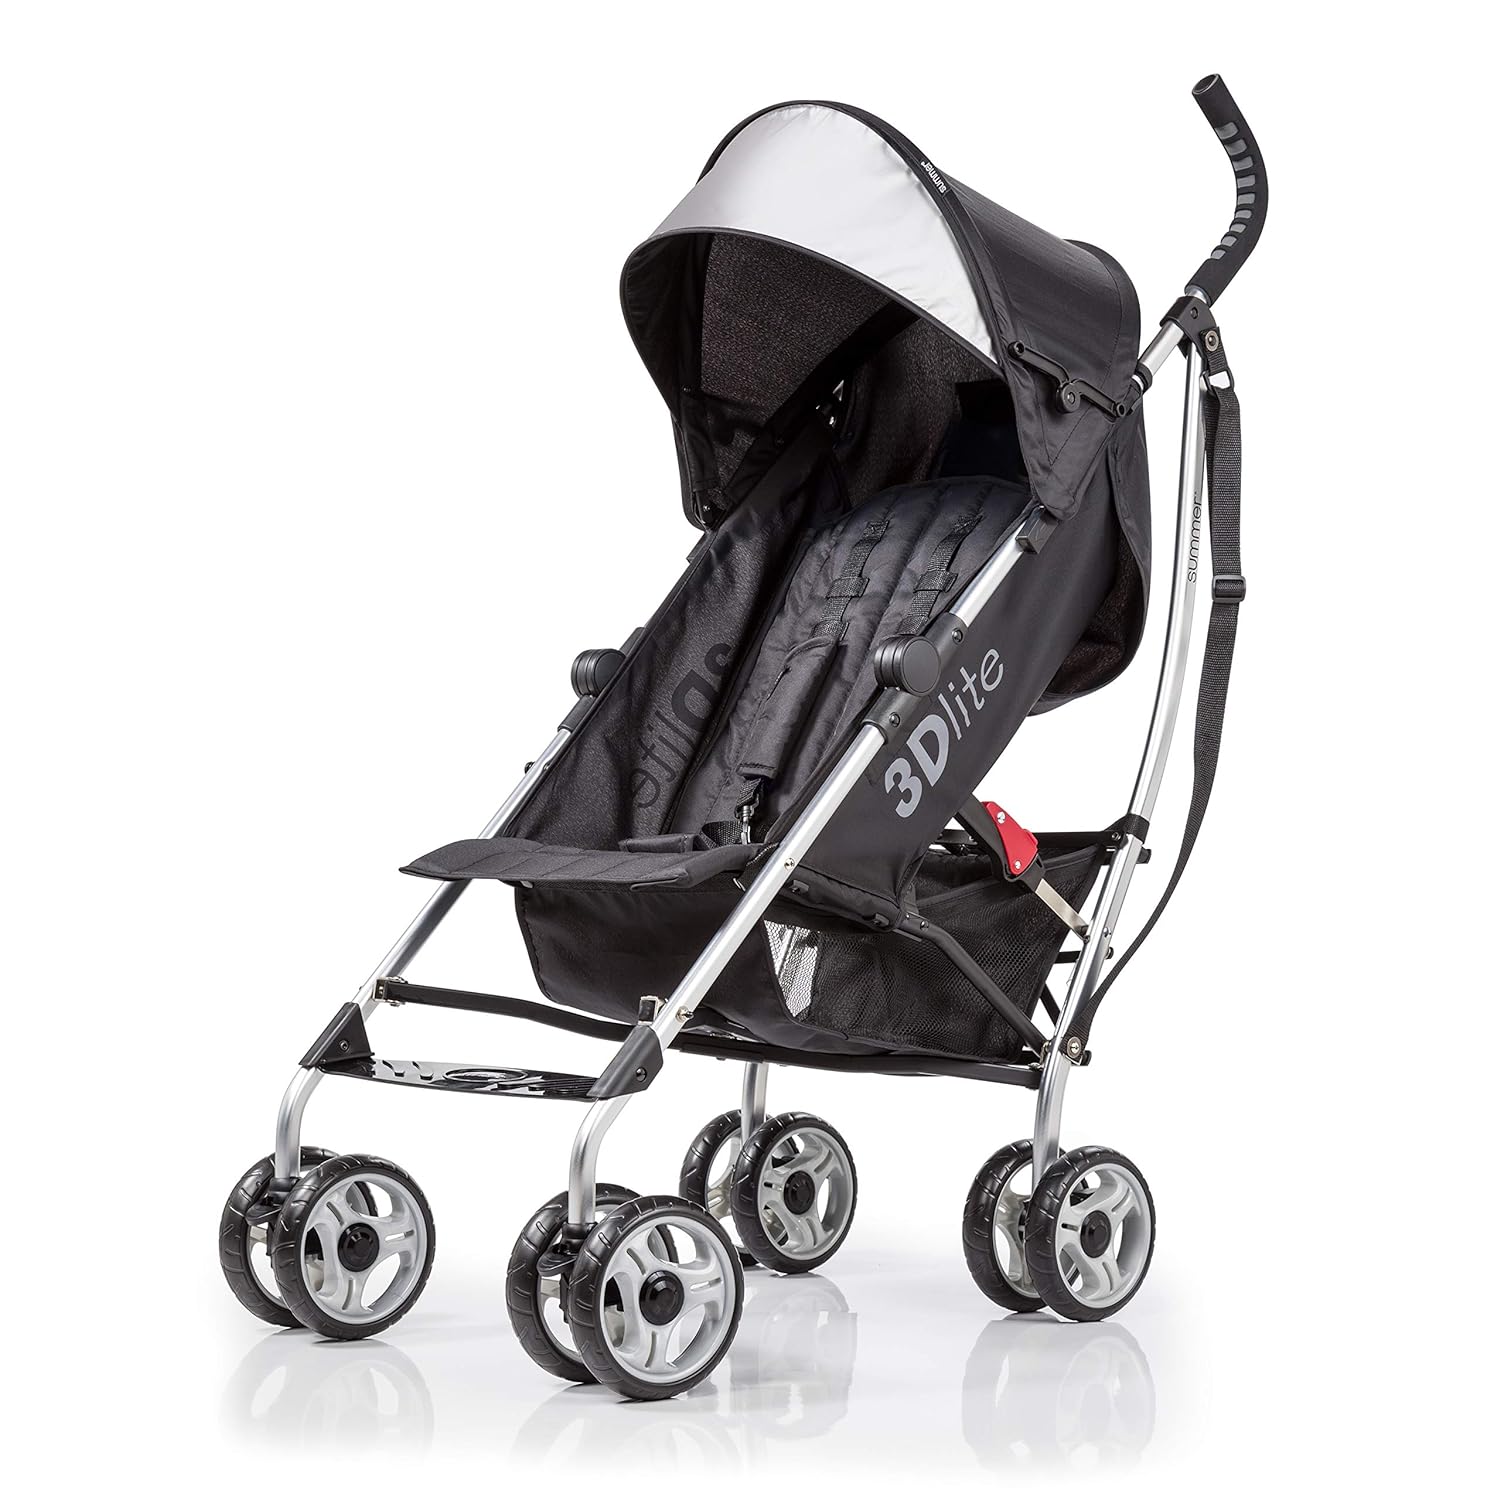 Summer Infant 3Dlite Convenience Stroller, Black – Lightweight Stroller with Aluminum Frame, Large Seat Area, Mesh Siding, 4 Position Recline, Extra Large Storage Basket – Infant Stroller for Travel